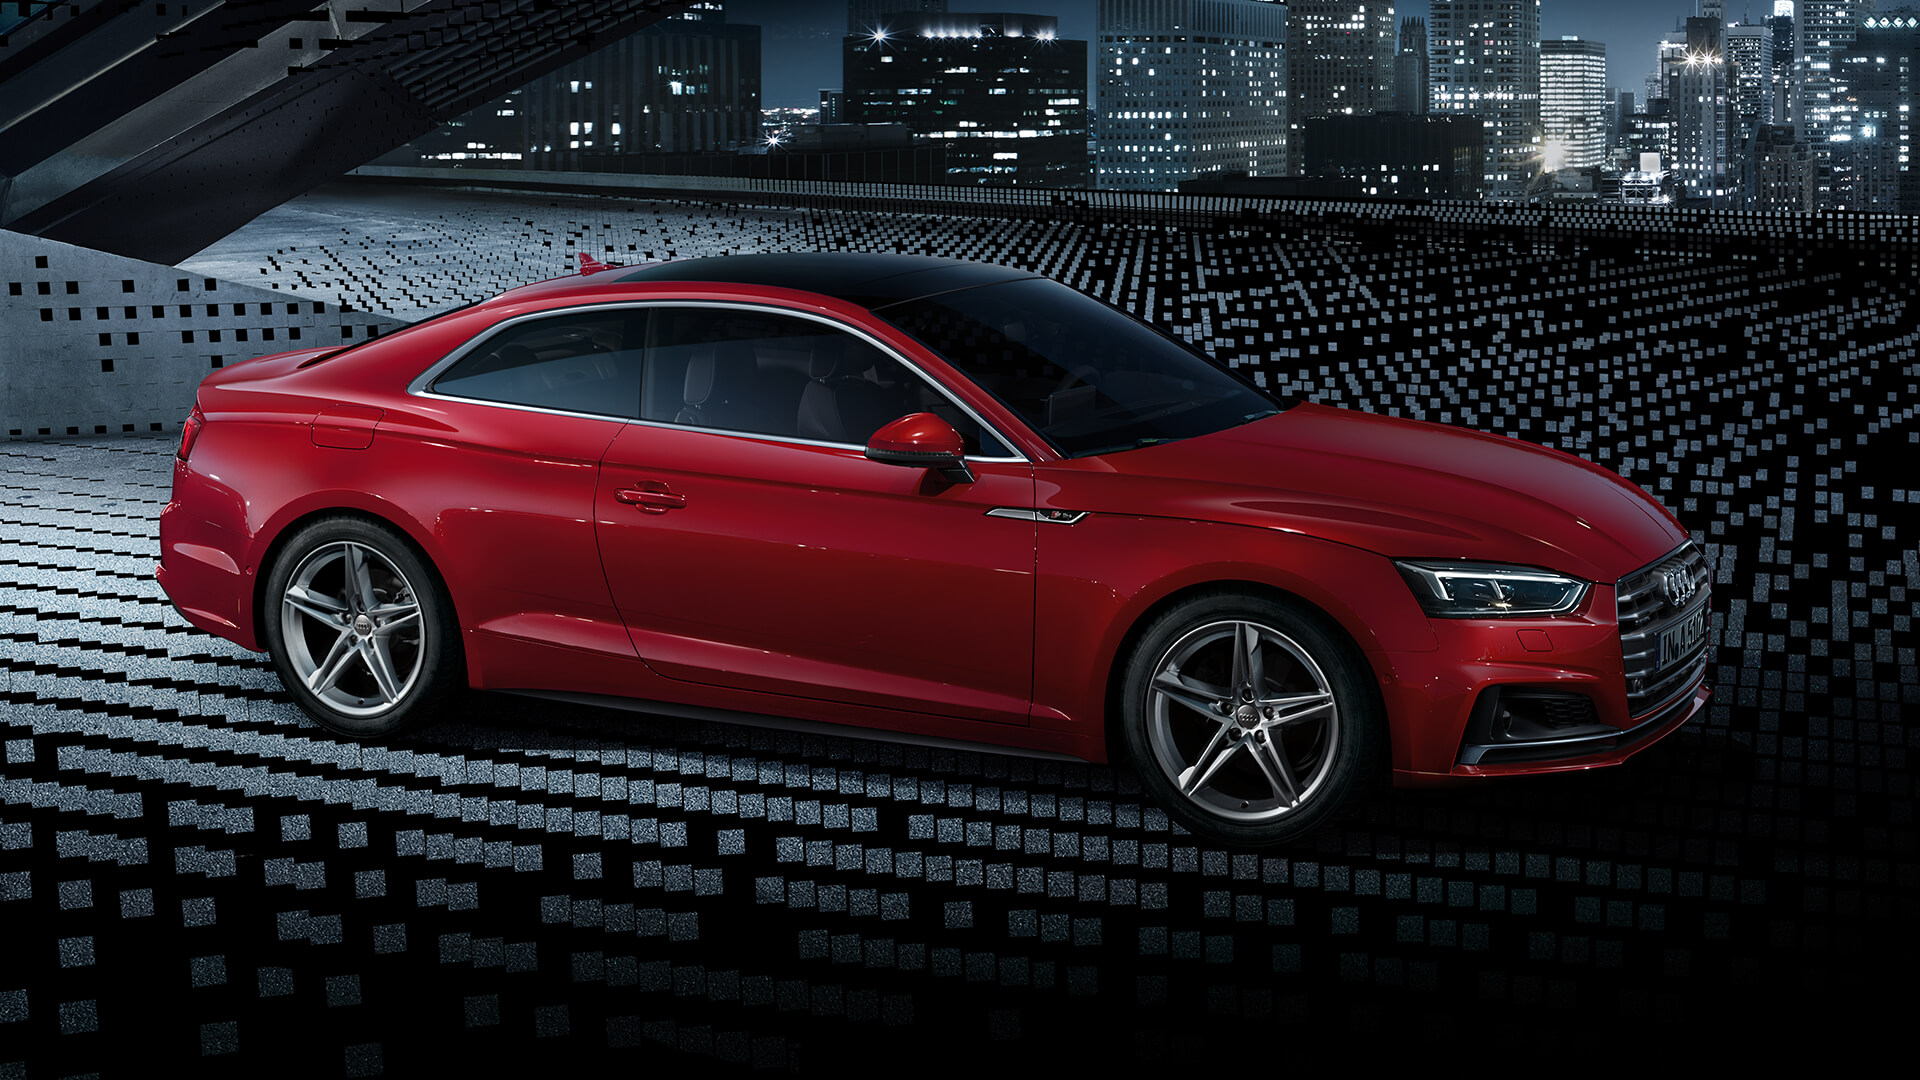 Audi A5 HD wallpapers, Desktop wallpaper - most viewed